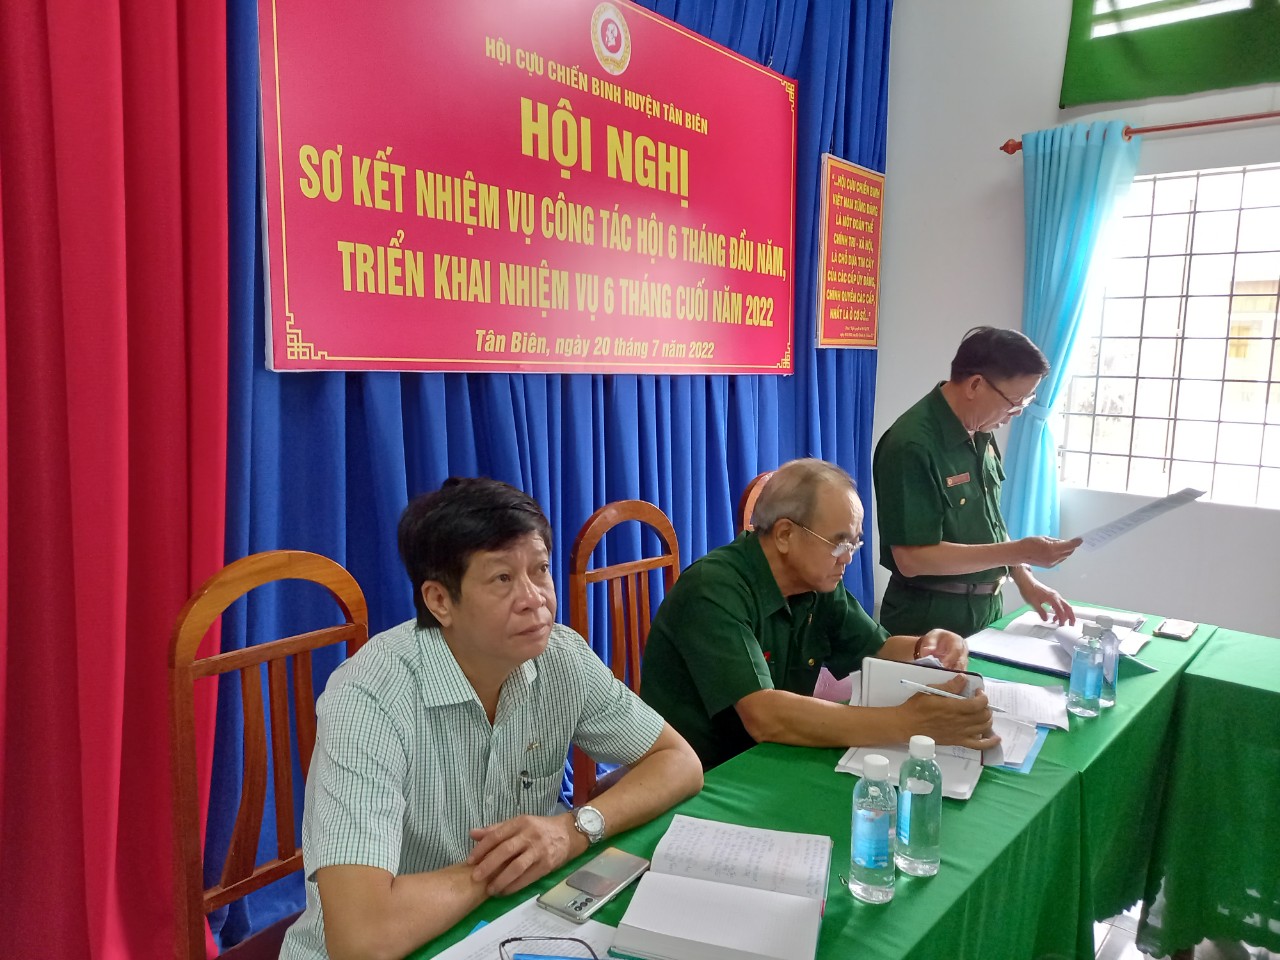 Hội Cựu chiến Binh huyện Tân Biên có nhiều hoạt động thiết thực